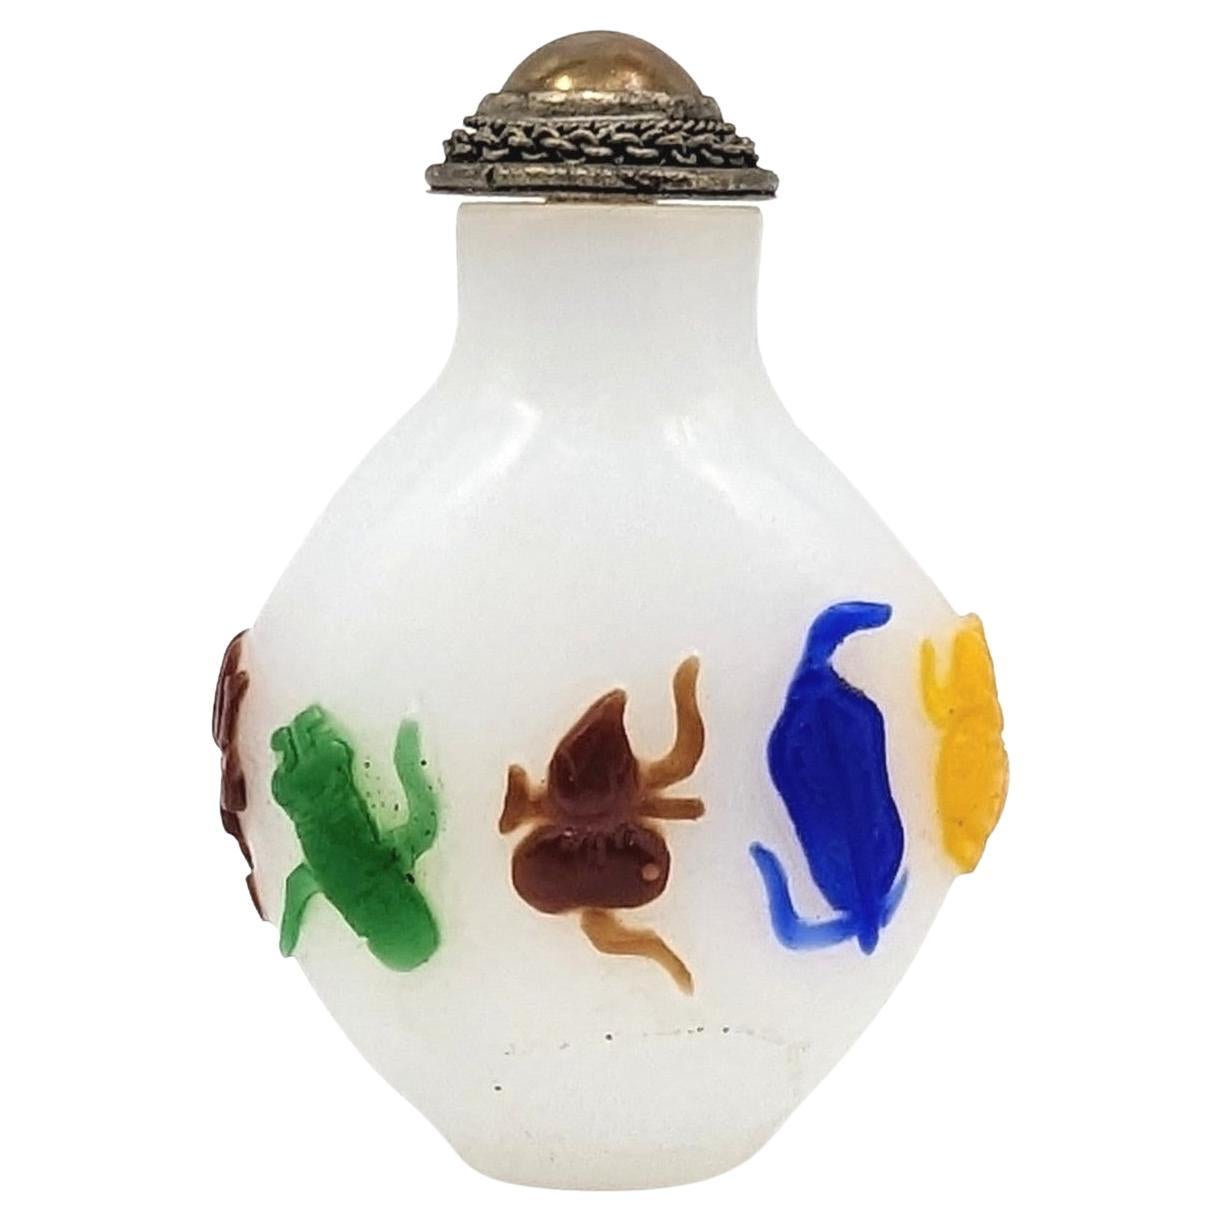 Antike chinesische mehrfarbige (5) Schnupftabakflasche aus Glas mit acht Schätzen, fein geschnitzt im Flachrelief in 4 Farben auf blassem weißen Grund

19. Jahrhundert, Qing-Dynastie